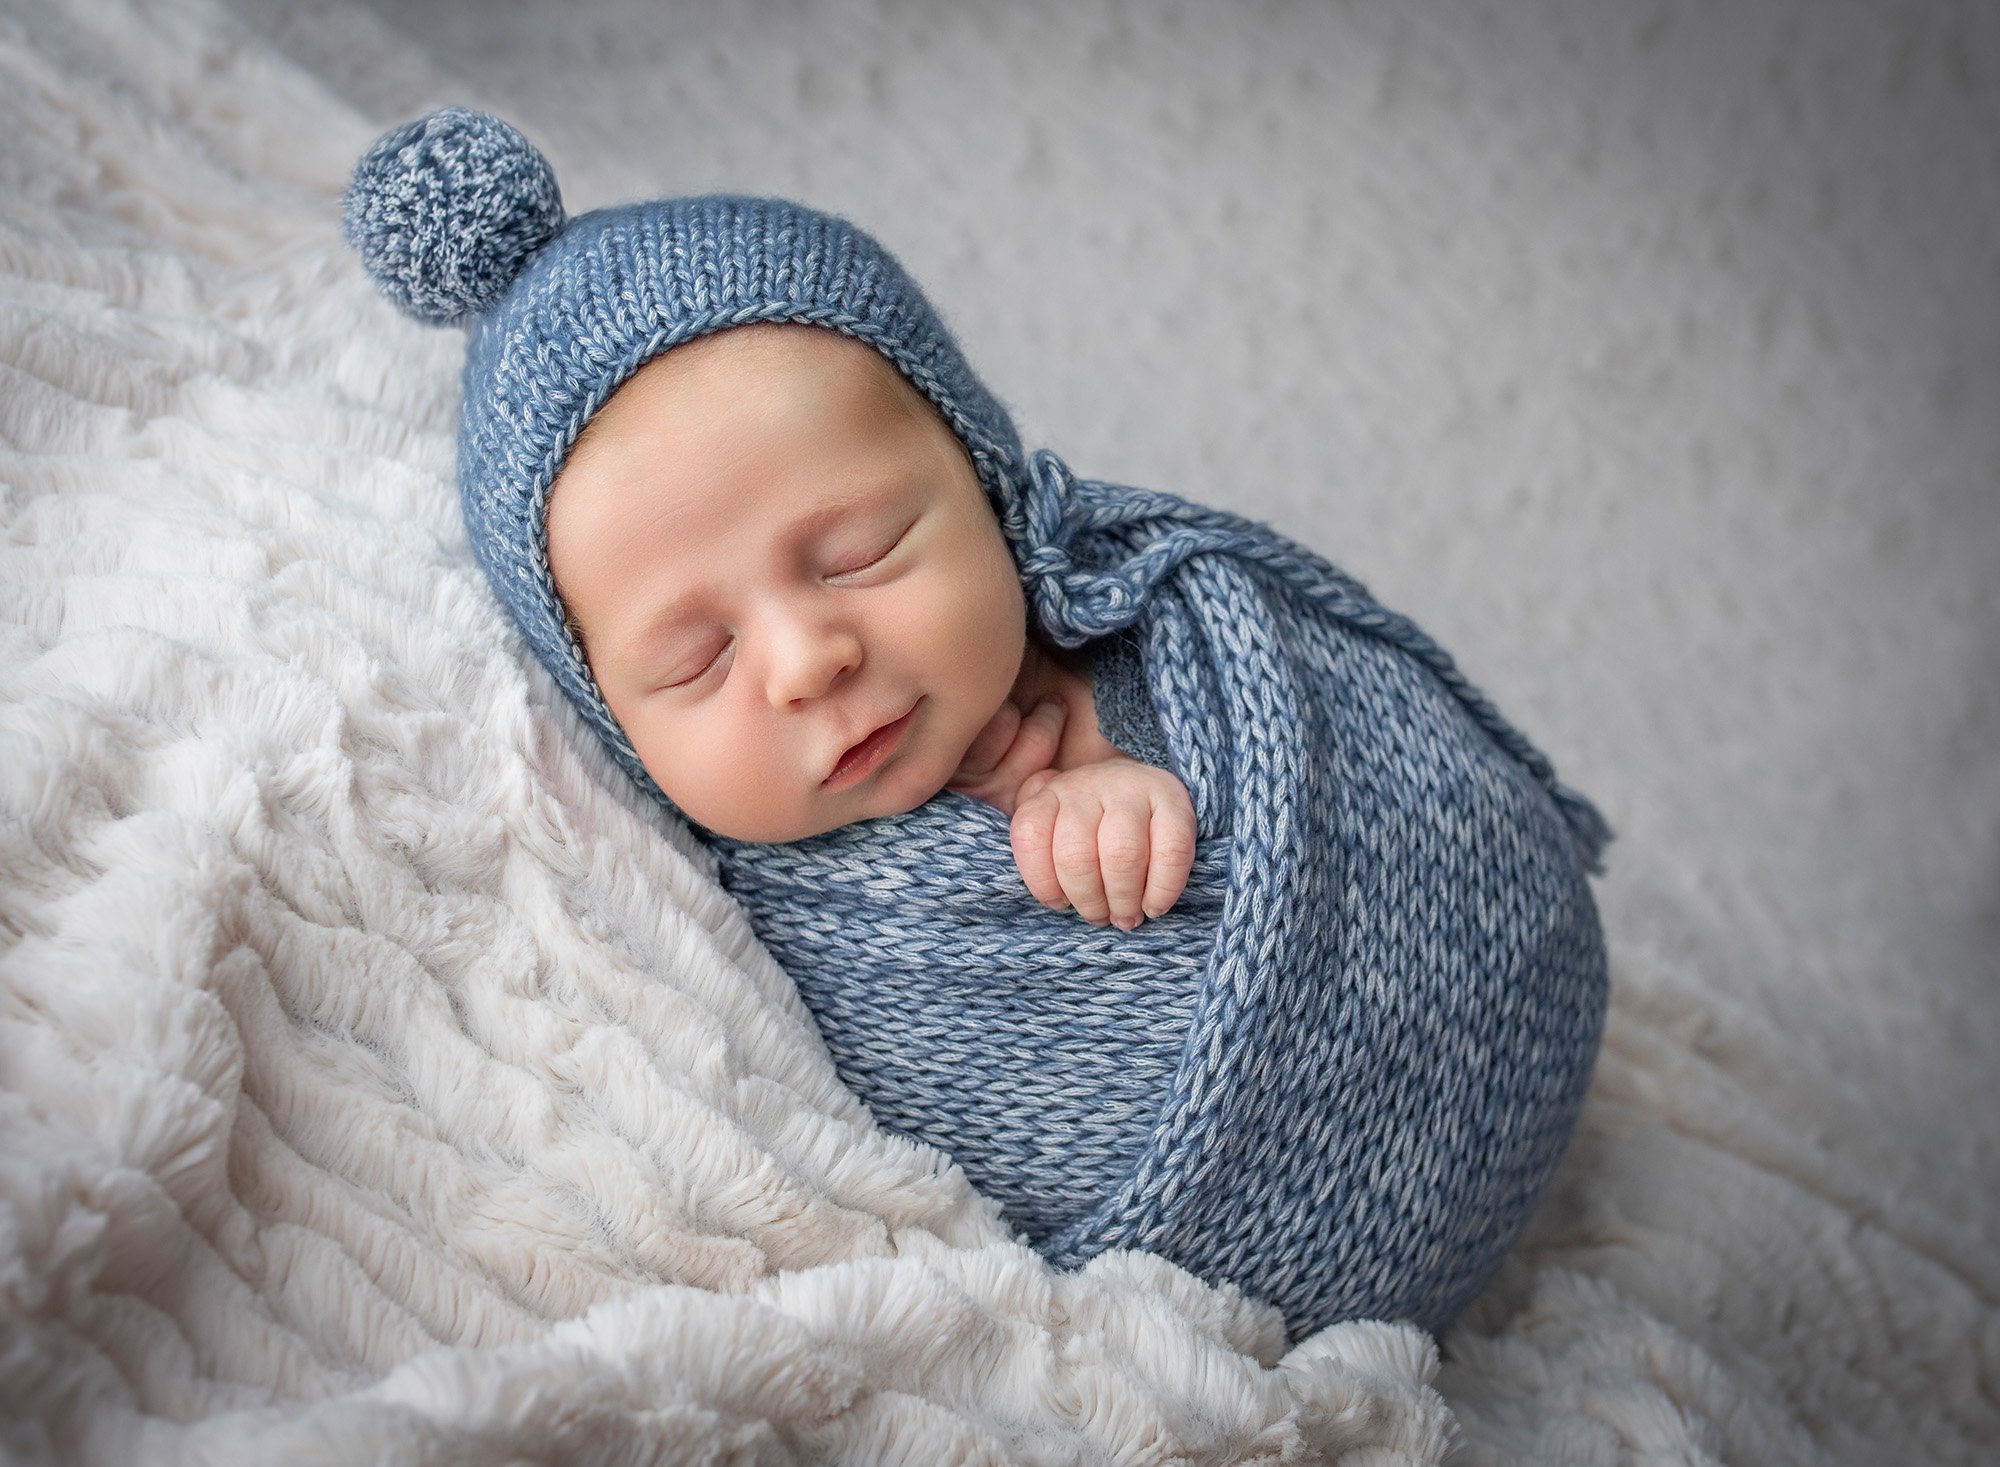 newborn baby boy swaddled in blue fast asleep on a fluffy blanket